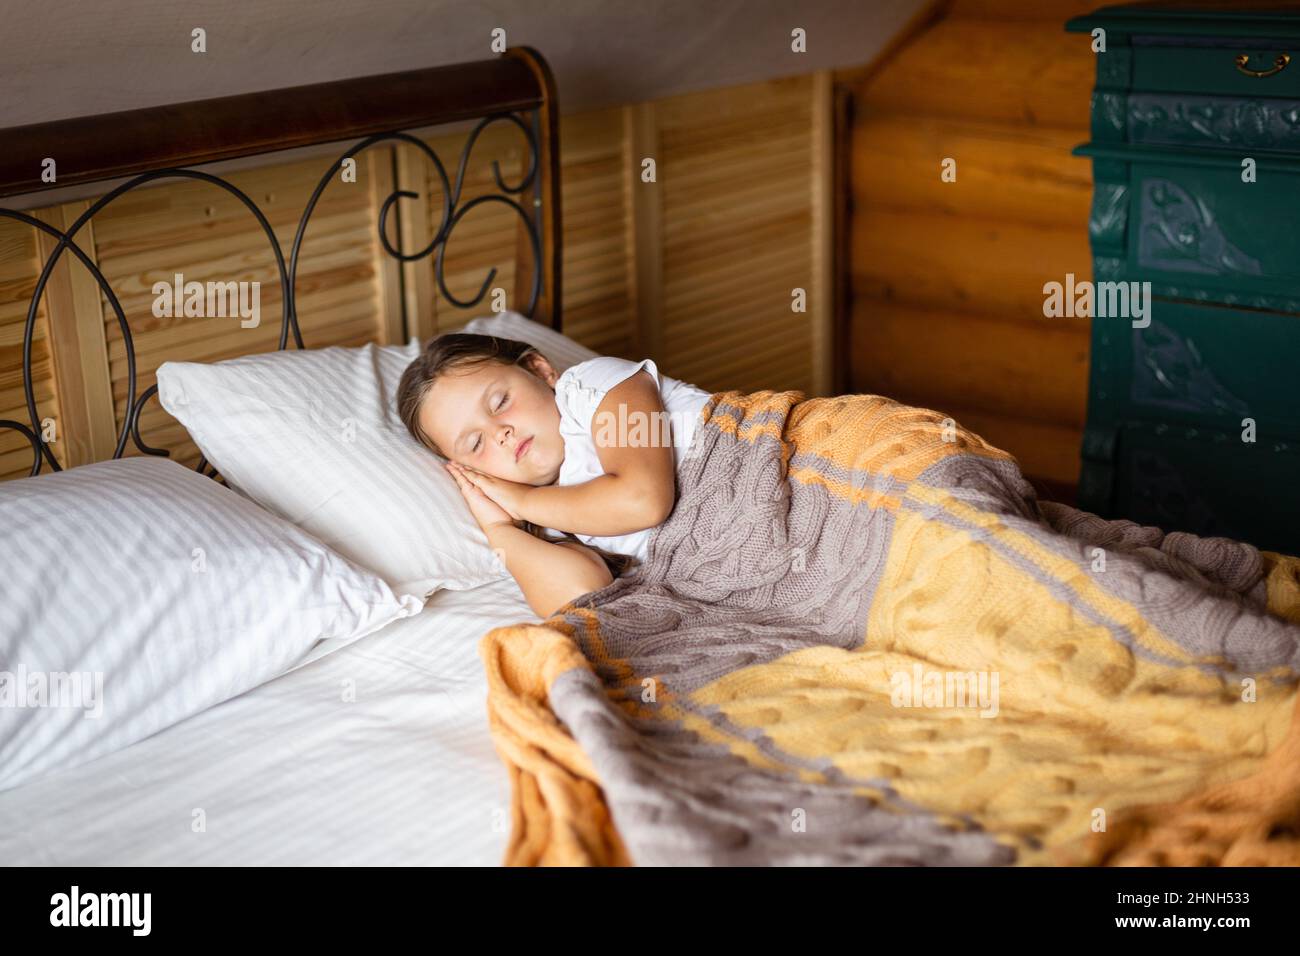 Jeune fille caucasienne prenant la sieste sur un grand lit double avec les  deux mains sous la tête recouverte d'une couverture avec la poitrine des  tiroirs derrière le lit dans une maison